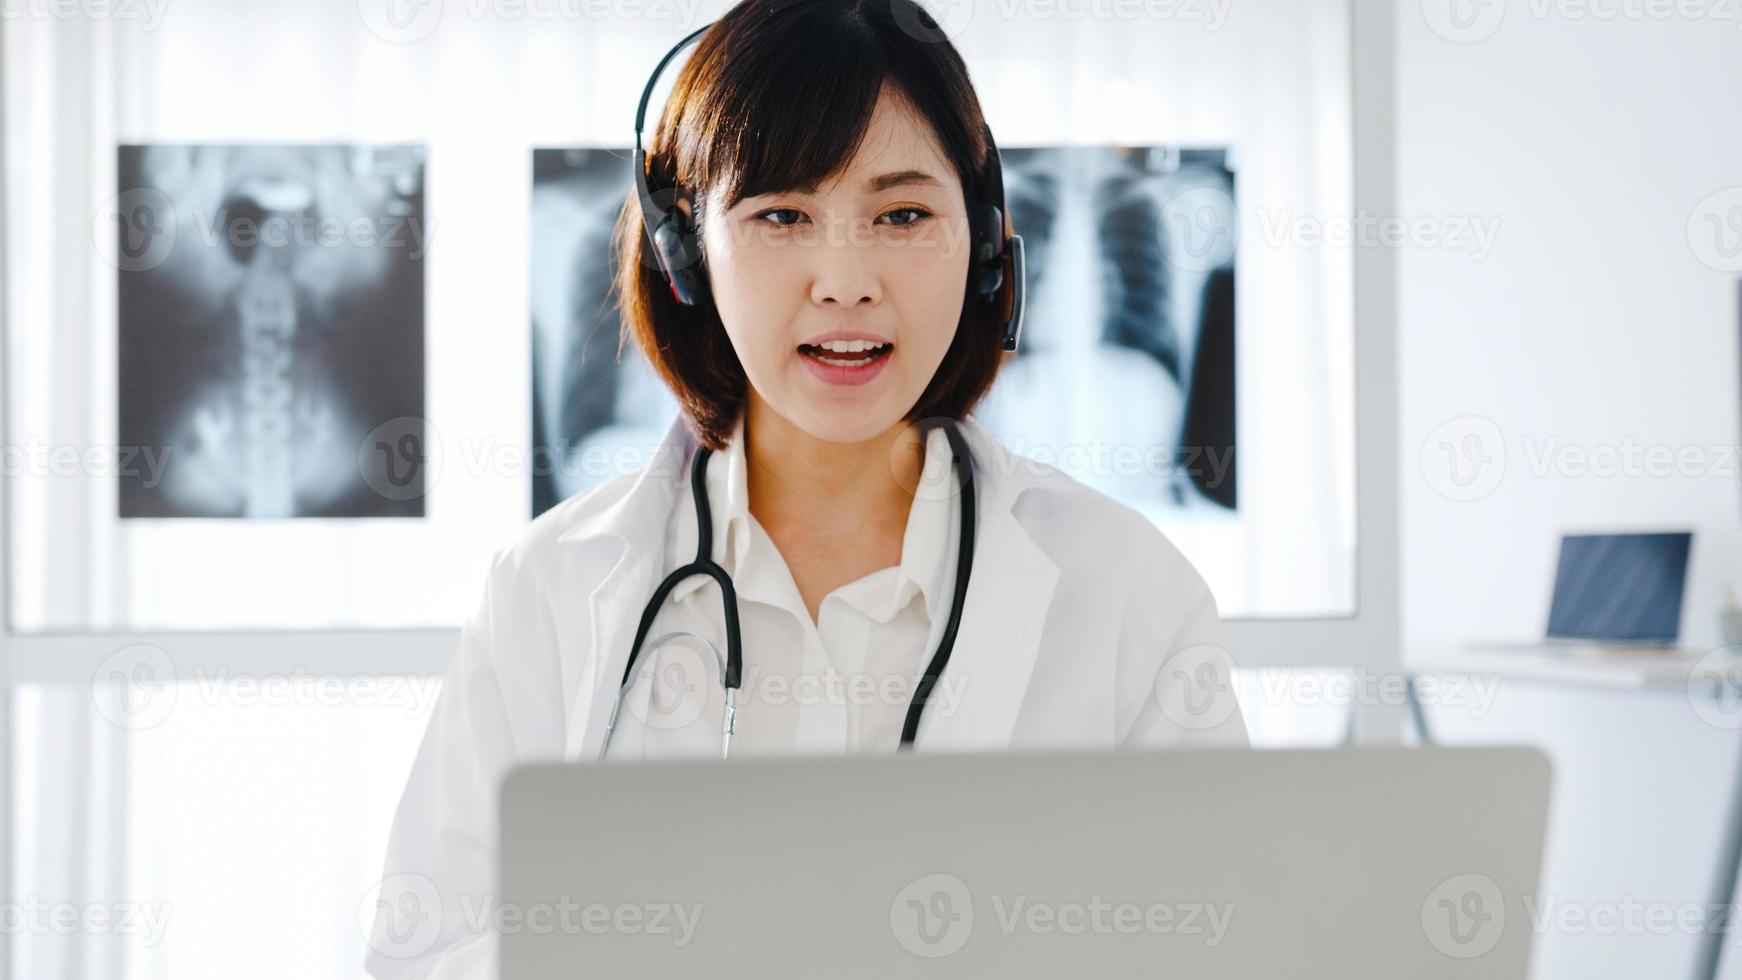 ung asiatisk kvinnlig läkare i vit medicinsk uniform med stetoskop som använder dator bärbar dator talar videokonferenssamtal med patienten vid skrivbordet på vårdkliniken eller sjukhuset. konsult- och terapikoncept foto